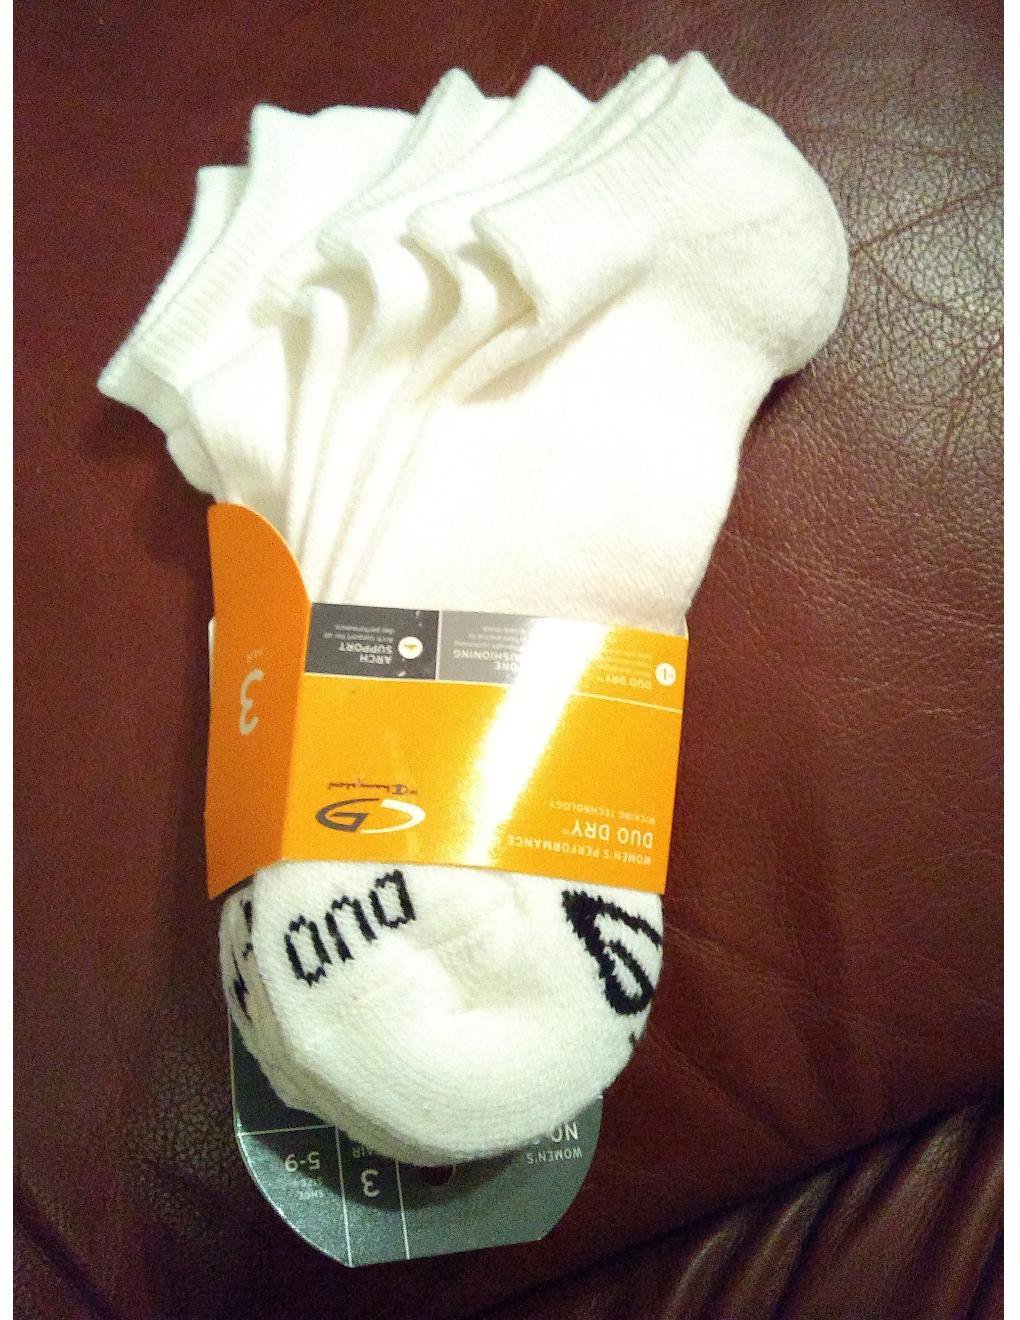 c9 socks duo dry